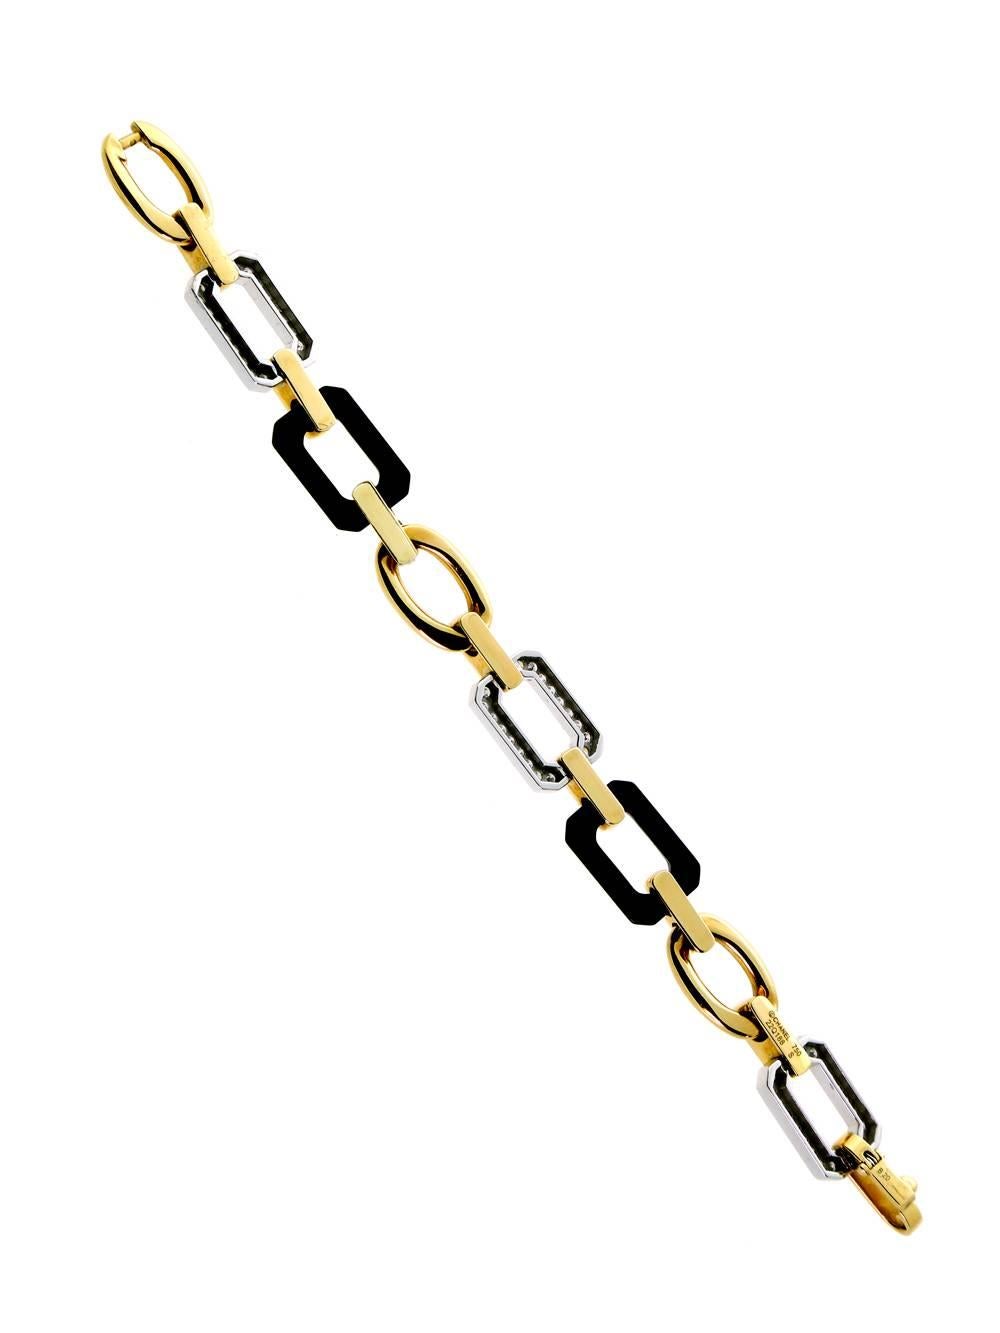 Ein schickes Chanel-Armband aus 18k Gelbgold, Onyx und Diamanten (ca. 1ct) vereinen sich in diesem stilvollen Armband. Das klassische Kettendesign verleiht ihm einen Hauch von Tradition.

Gewicht: 31,2 Gramm
Länge: 7 Zoll
Abmessungen: 12mm breit